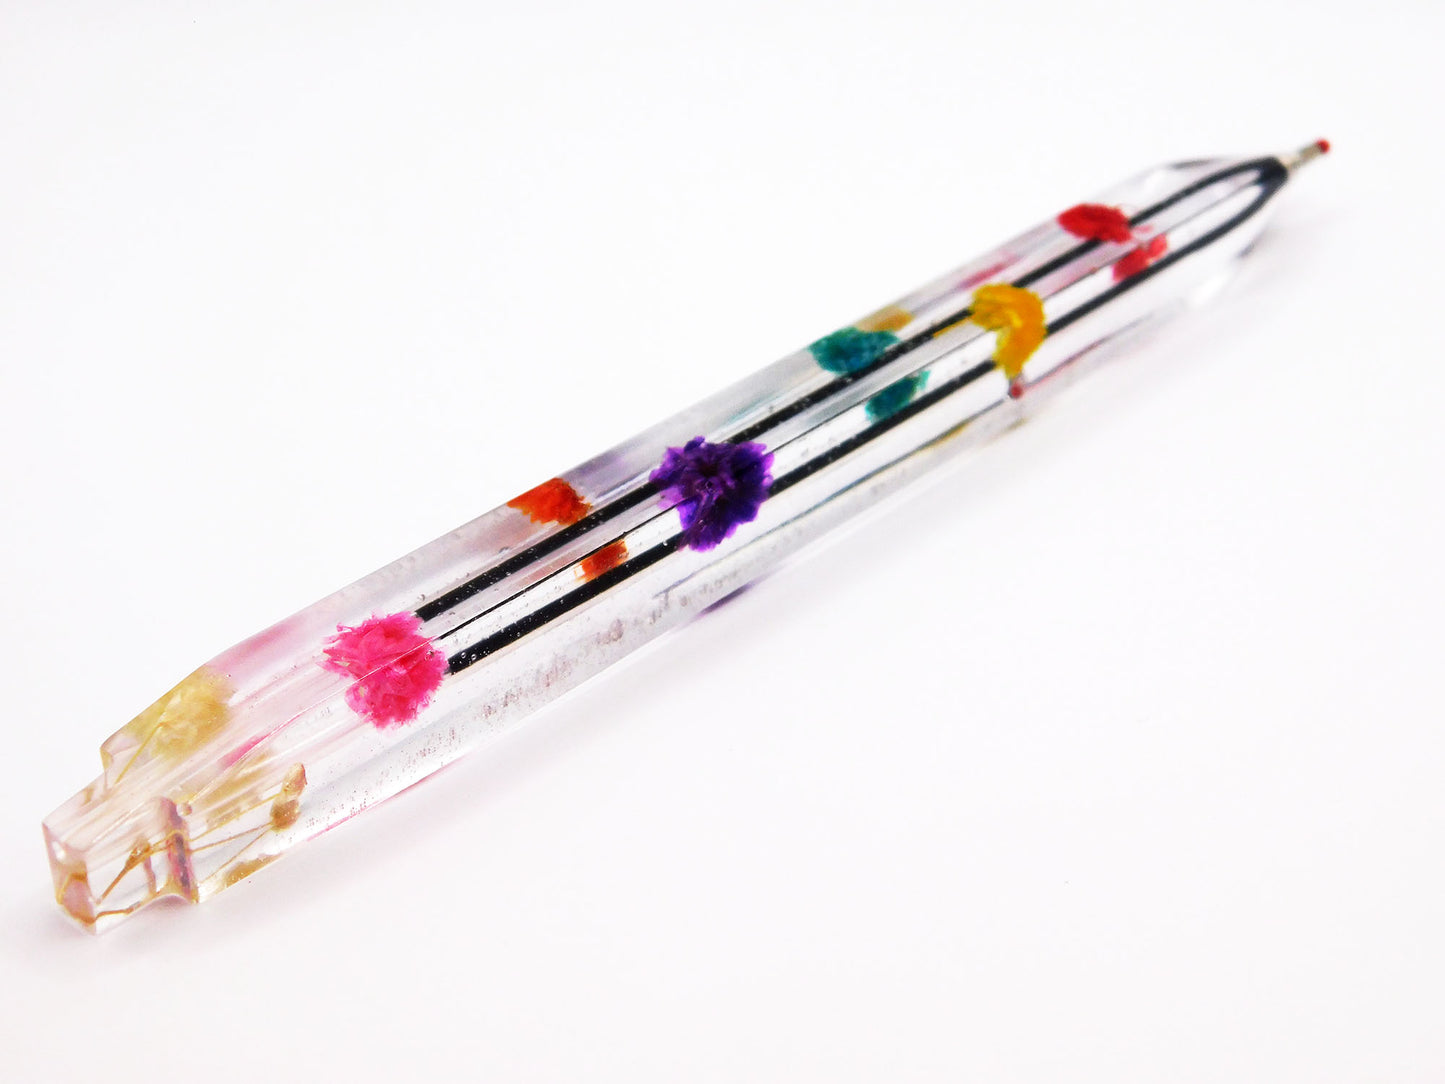 Handmade Resin Pens - Dried Flowers